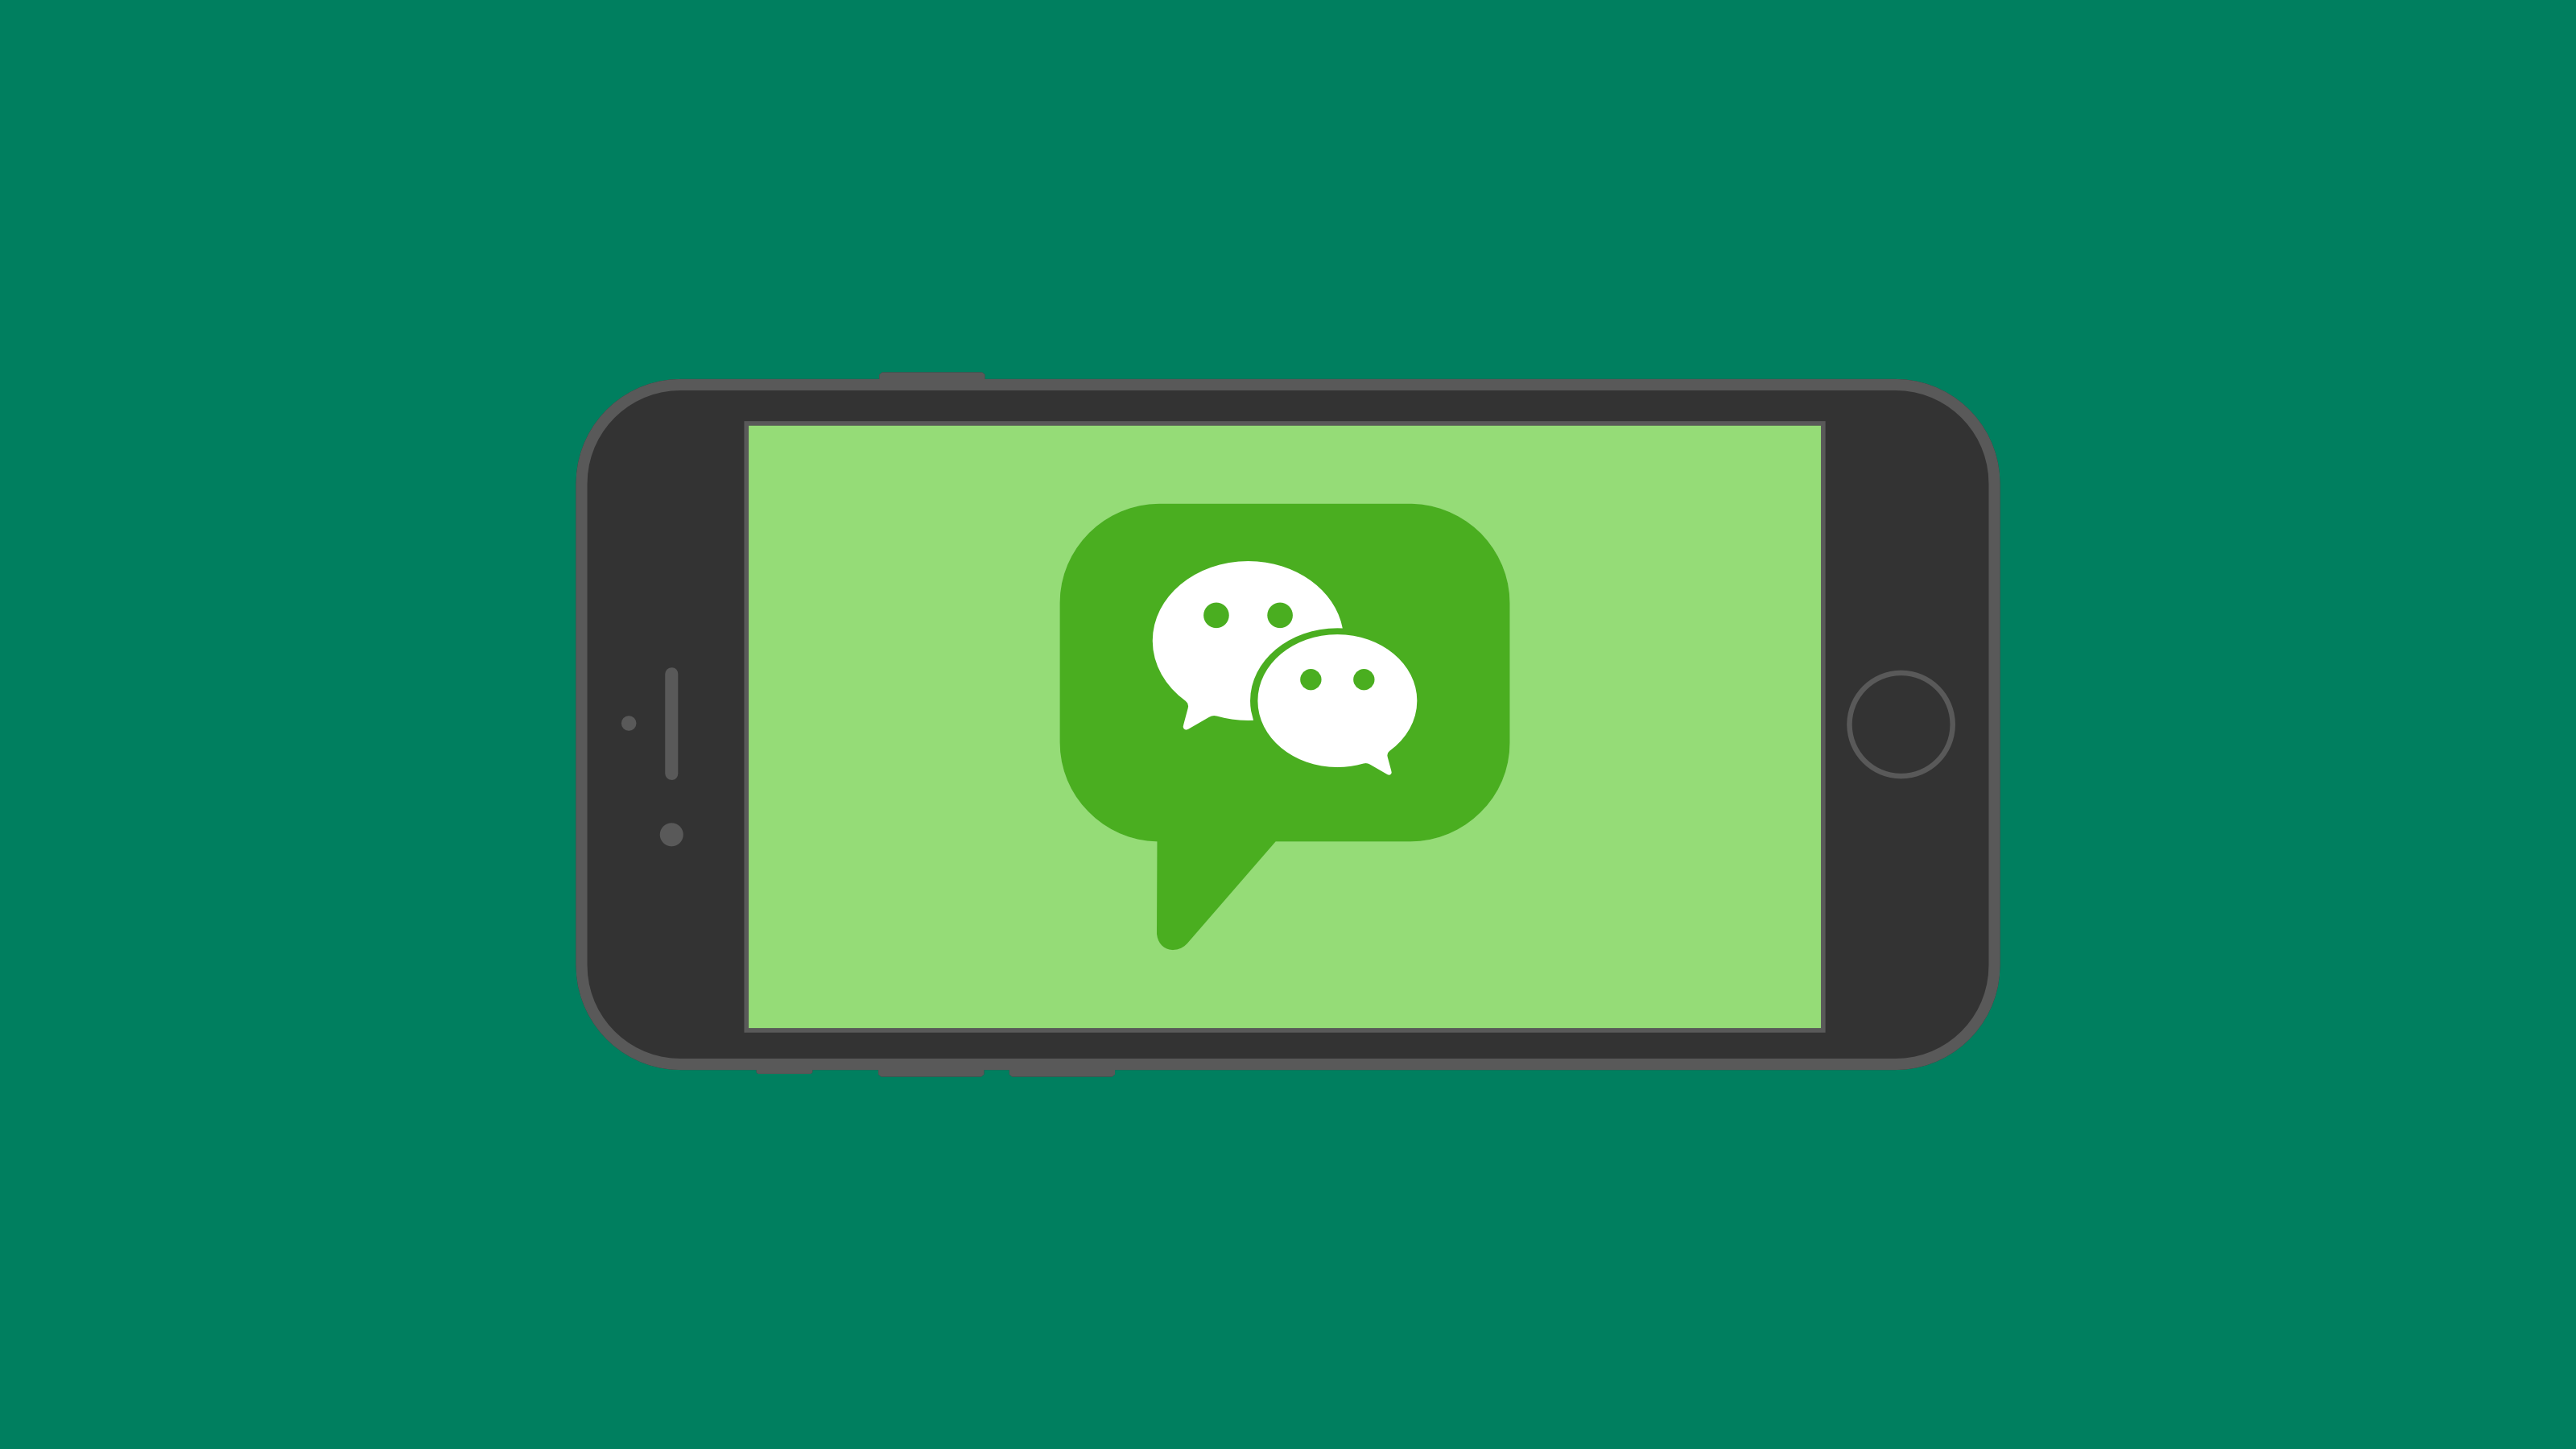 wechat messenger messaging apps brands